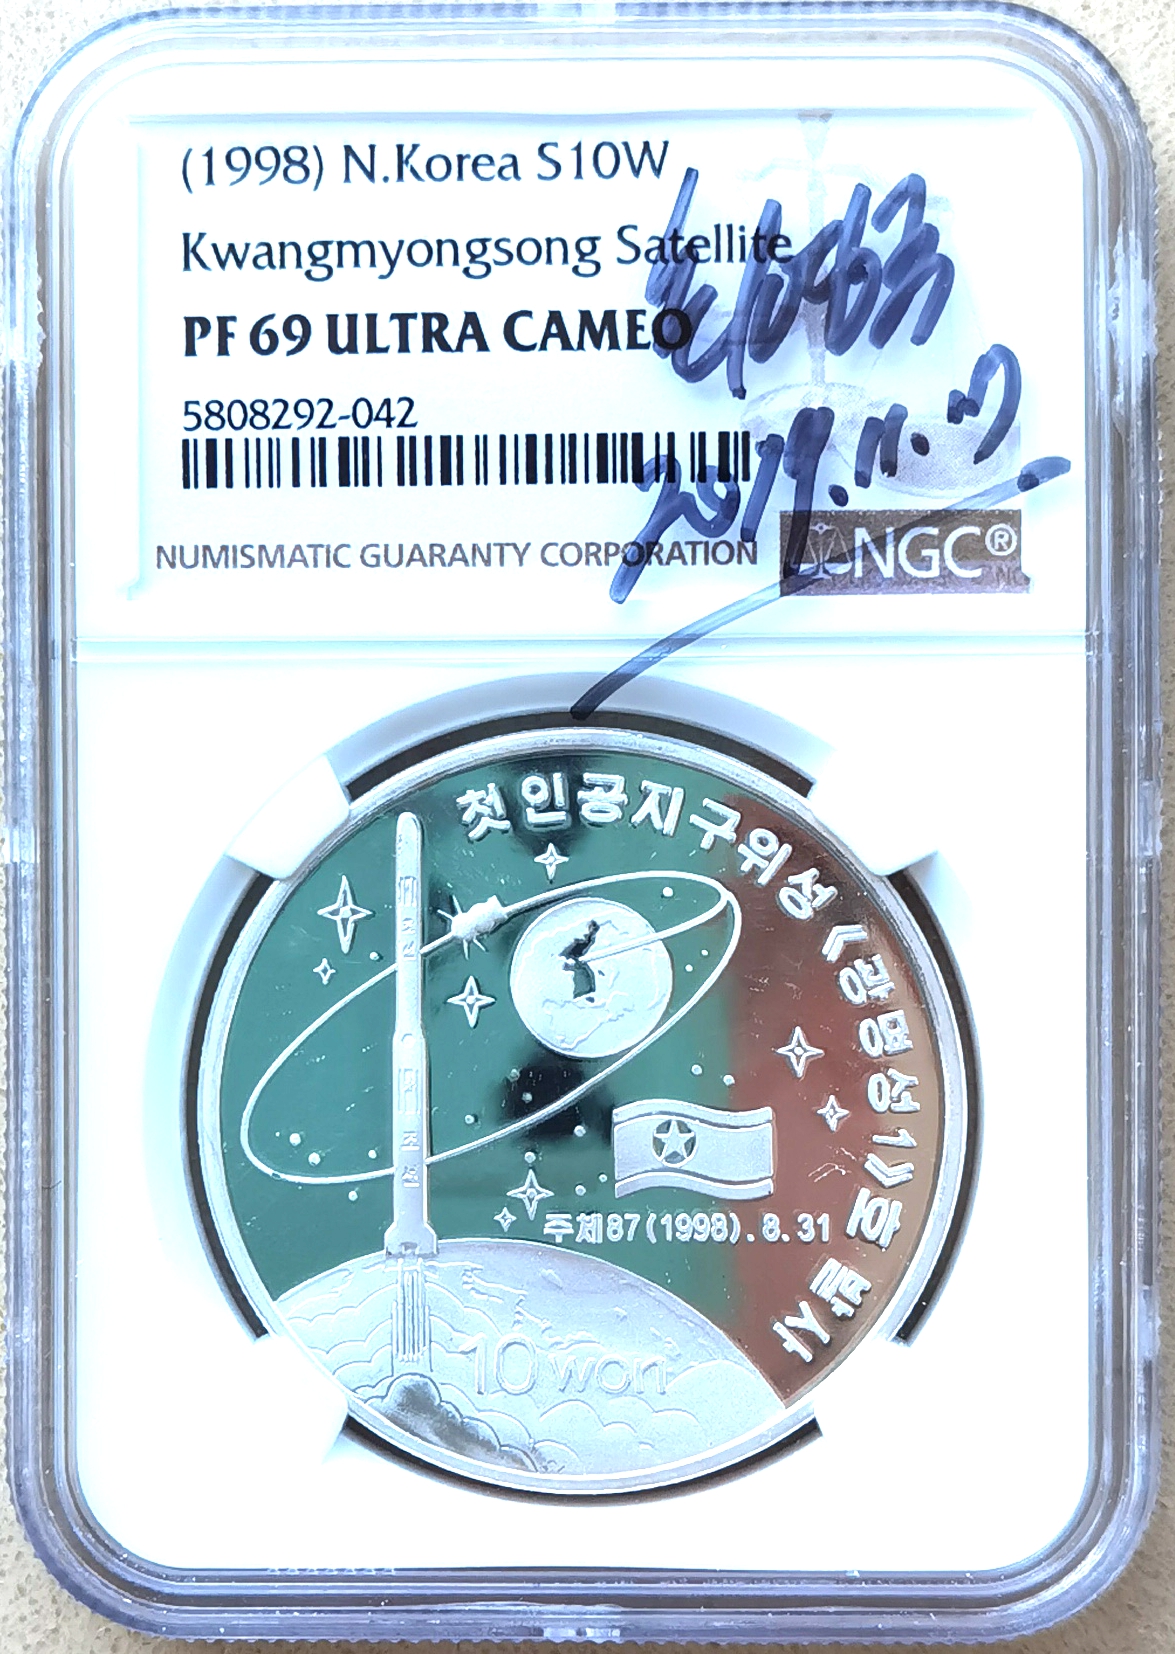 L3451, Korea RARE "Kwangmyongsong-1 Rocket Missile" Silver Coin 1998, NGC PF69